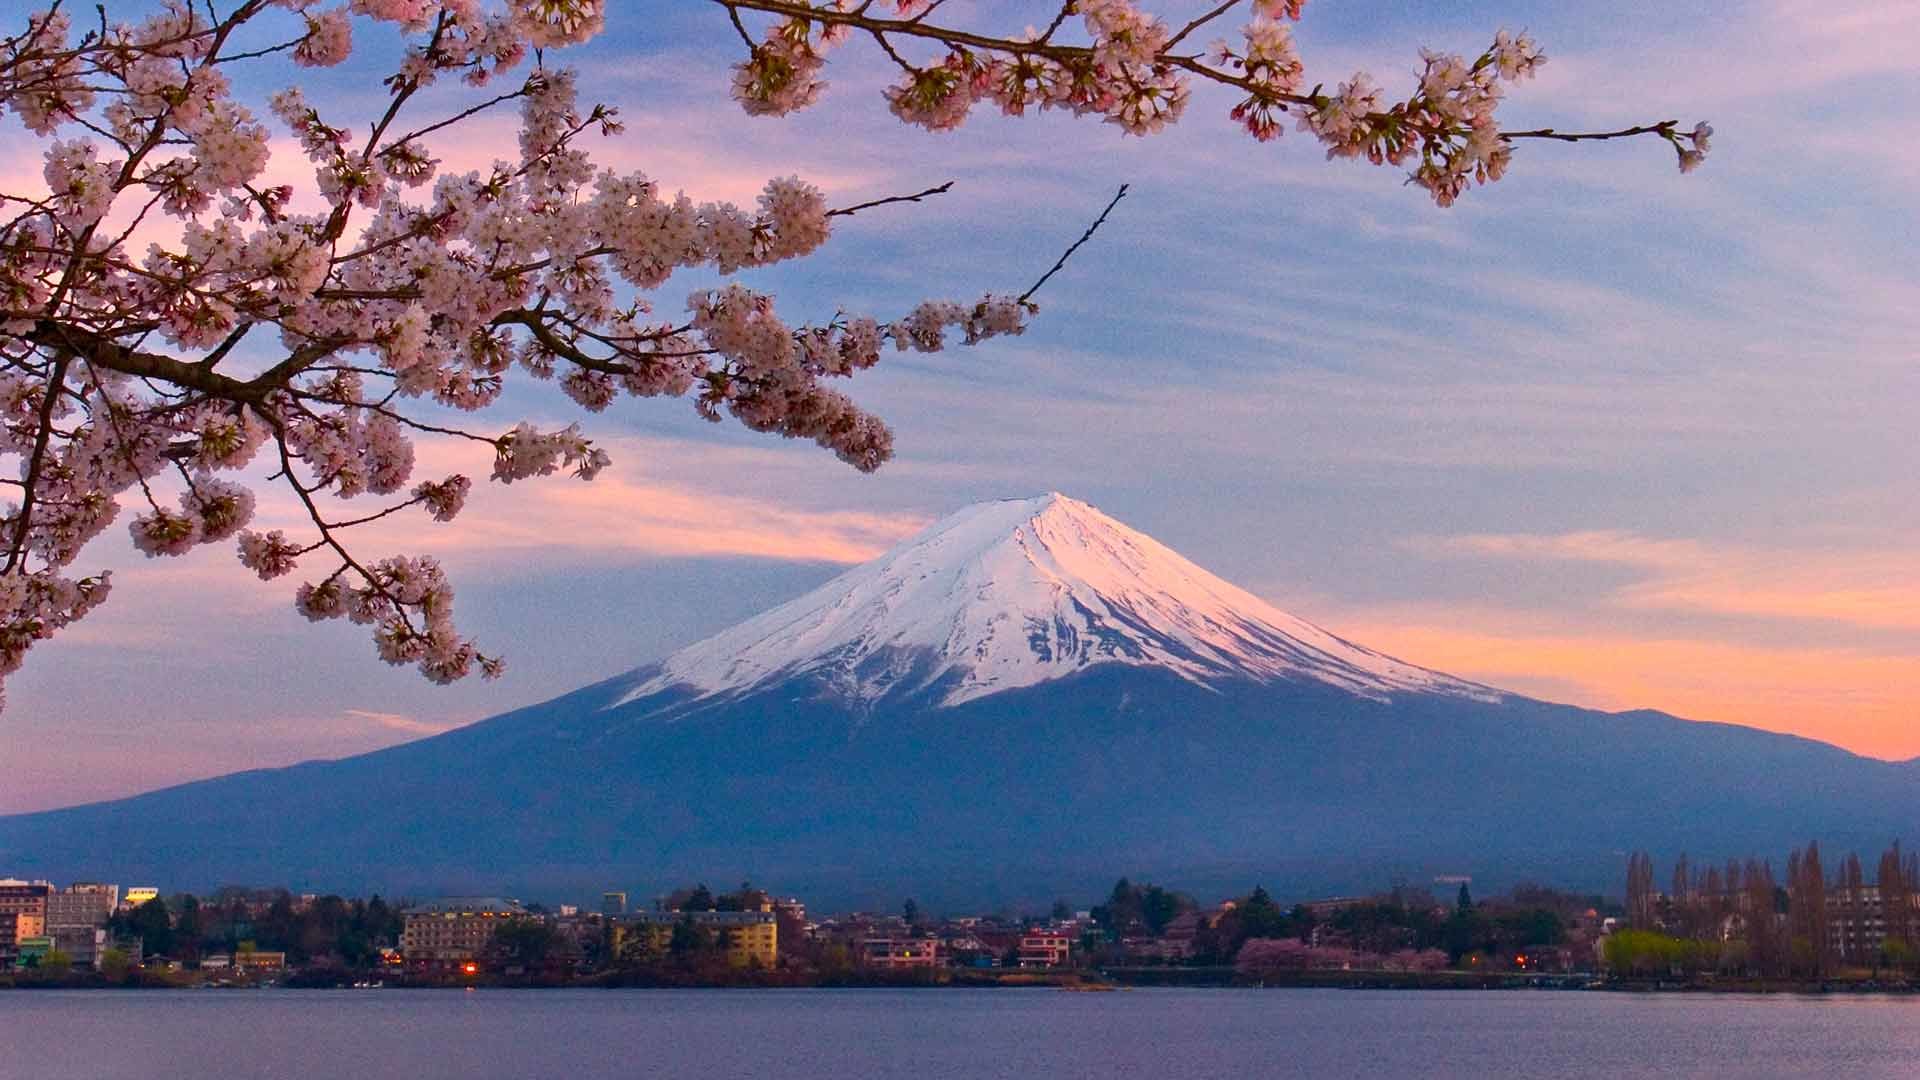 1920x1080 Japans Mount Fuji scenery wallpaper Desktop Background Scenery 